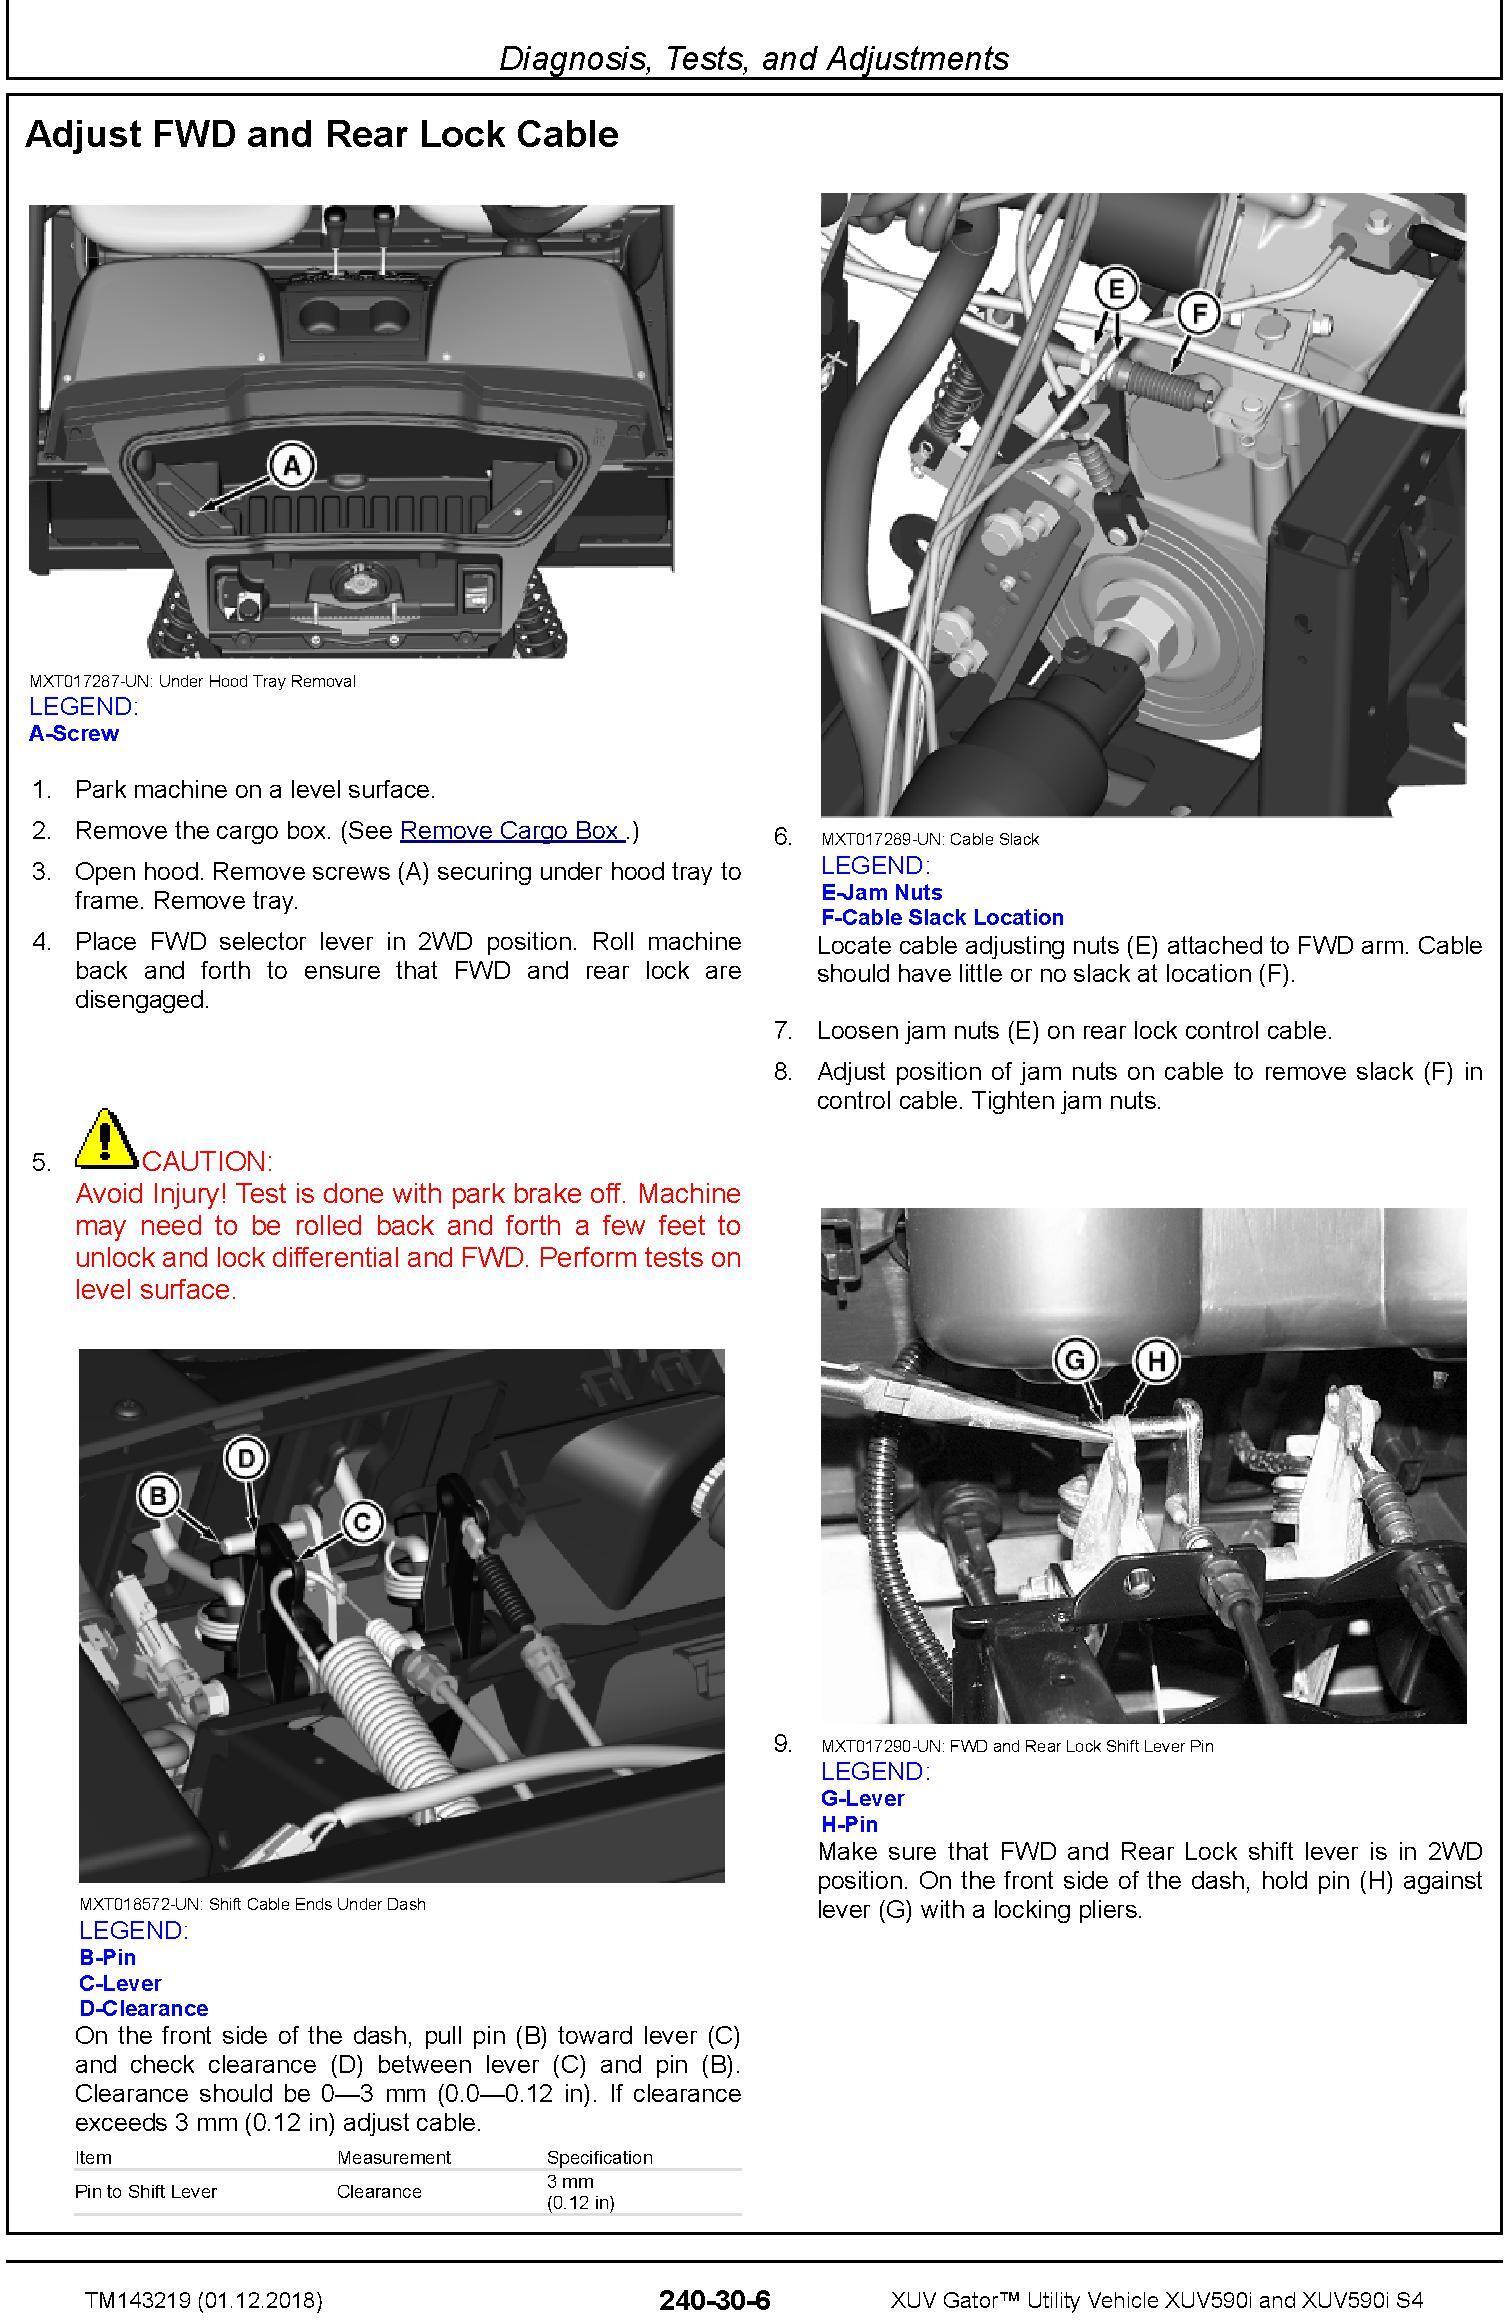 John Deere XUV Gator Utility Vehicle XUV590i, XUV590i S4 (SN.010001-) Diagnostic Manual (TM143219) - 3